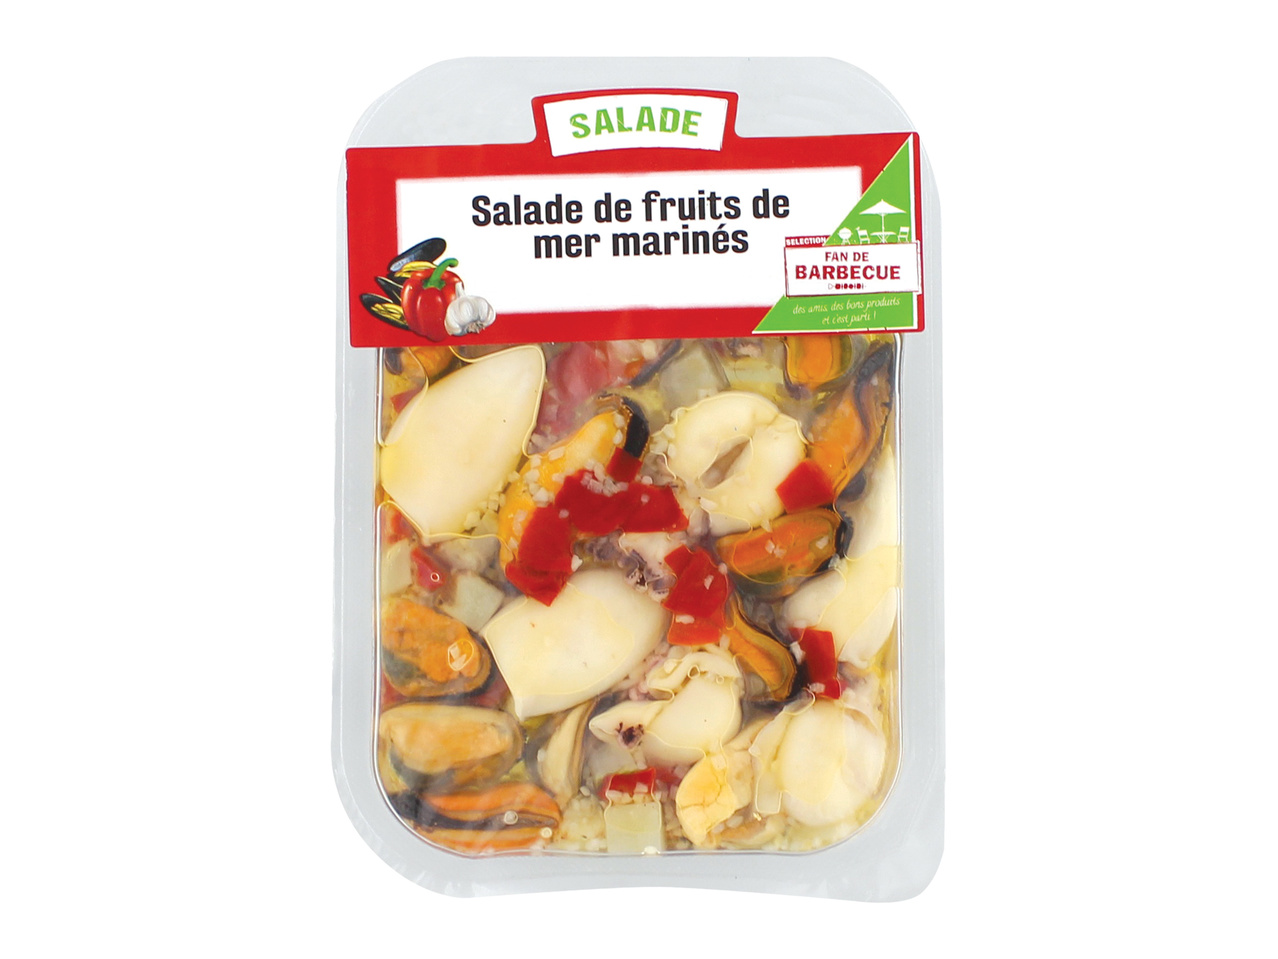 Salade fruits de mer marinés1